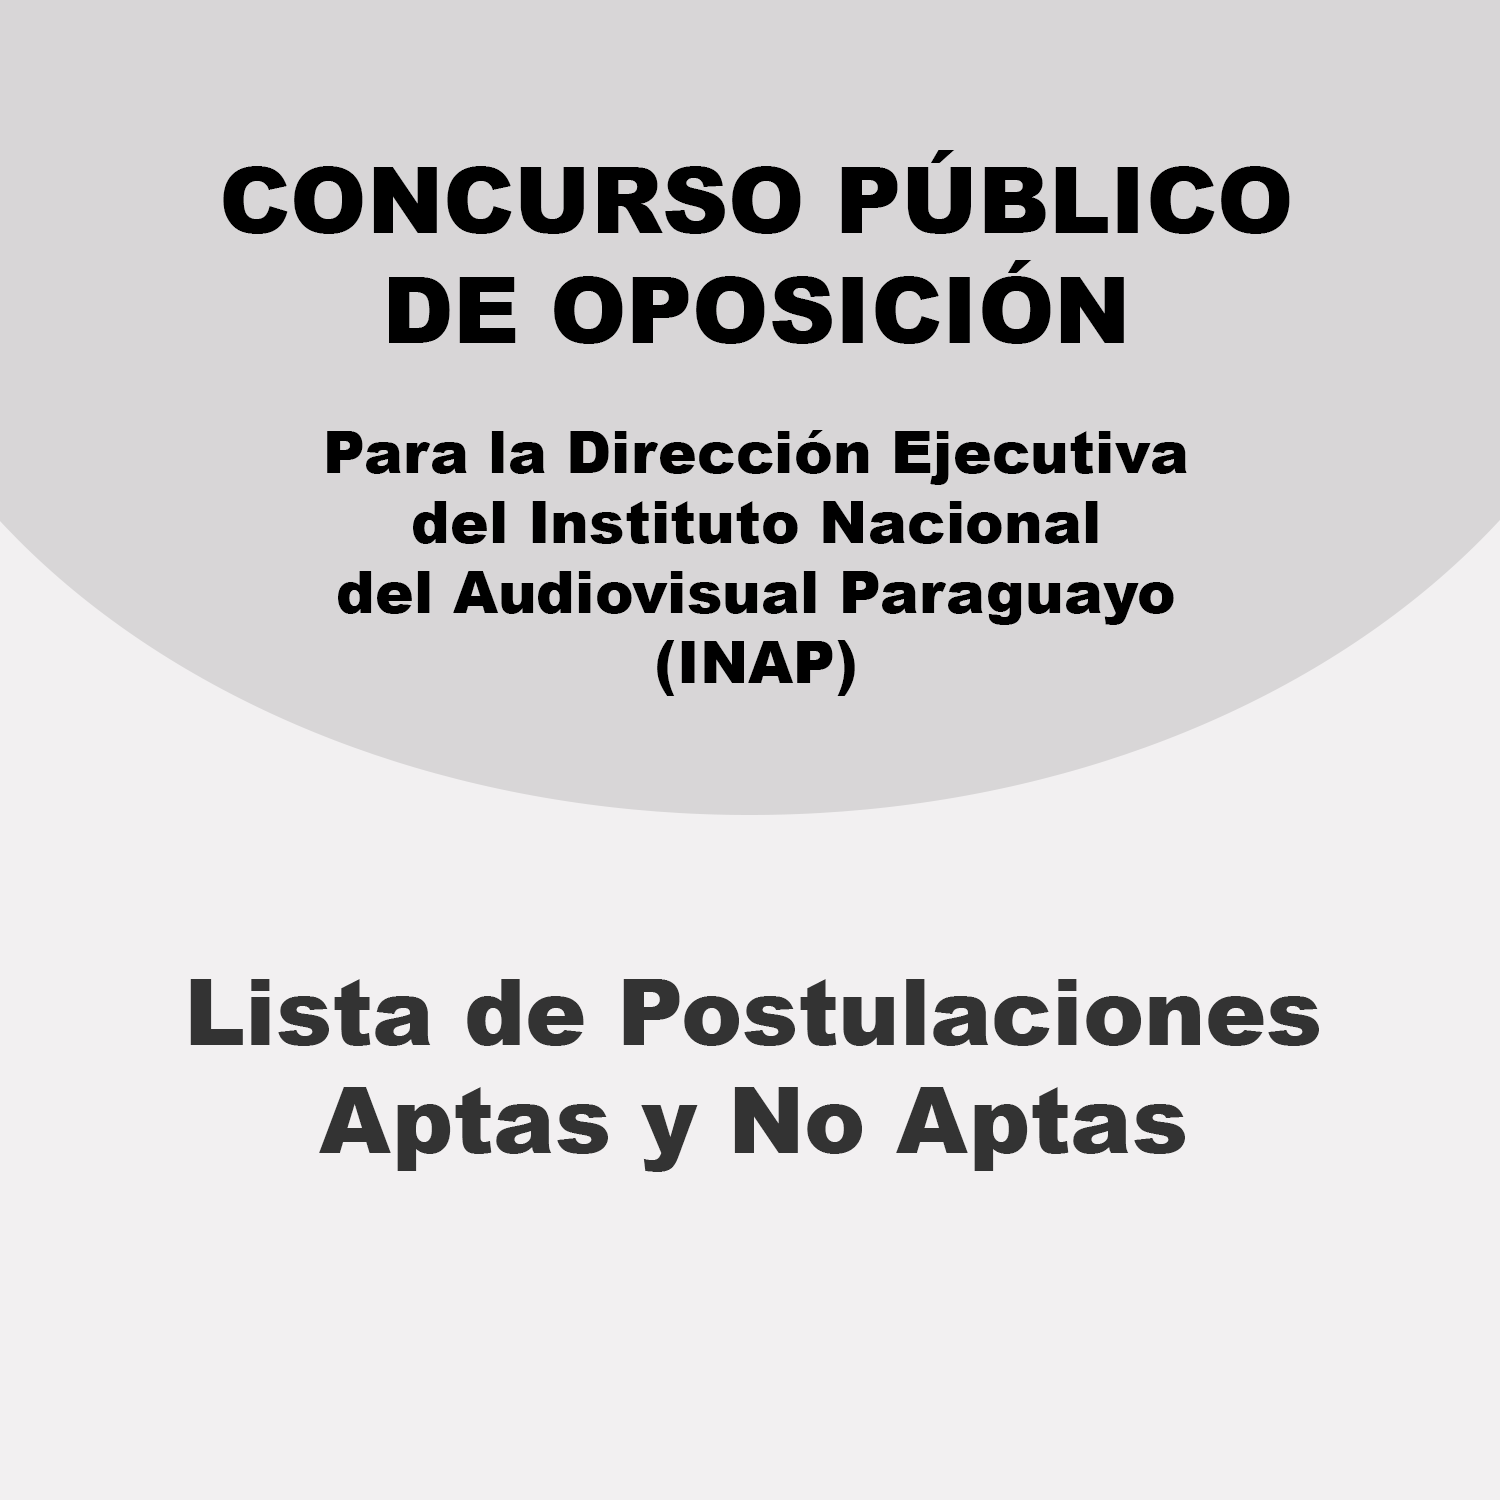 Junta de Calificaciones del INAP dio a conocer la lista de postulaciones aptas y no aptas para el cargo de Director Ejecutivo imagen